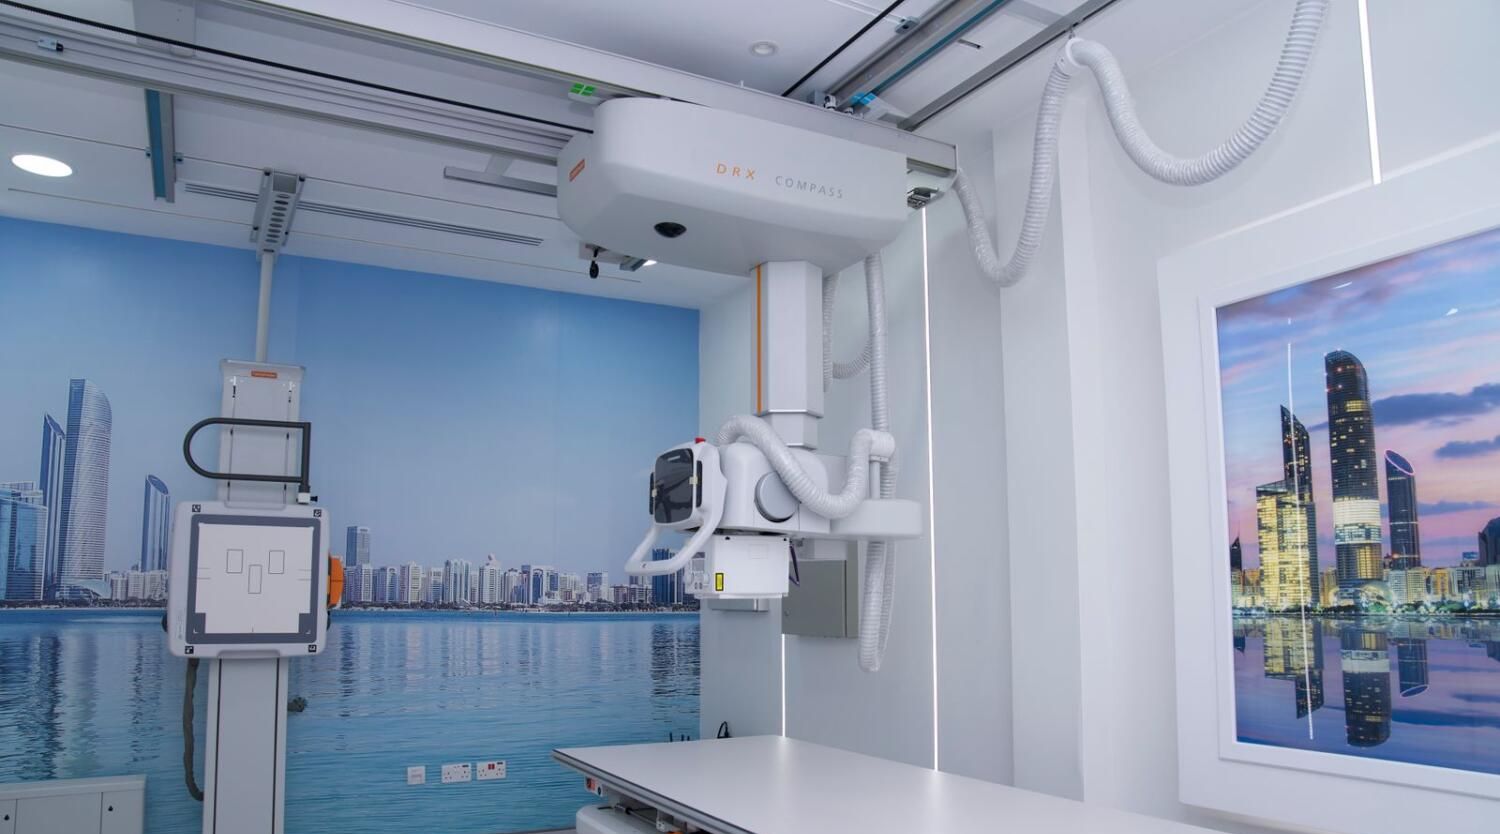 أبوظبي: إفتتاح منشأة متخصّصة في خدمات التصوير الطبي لتقليل وقت انتظار المرضى